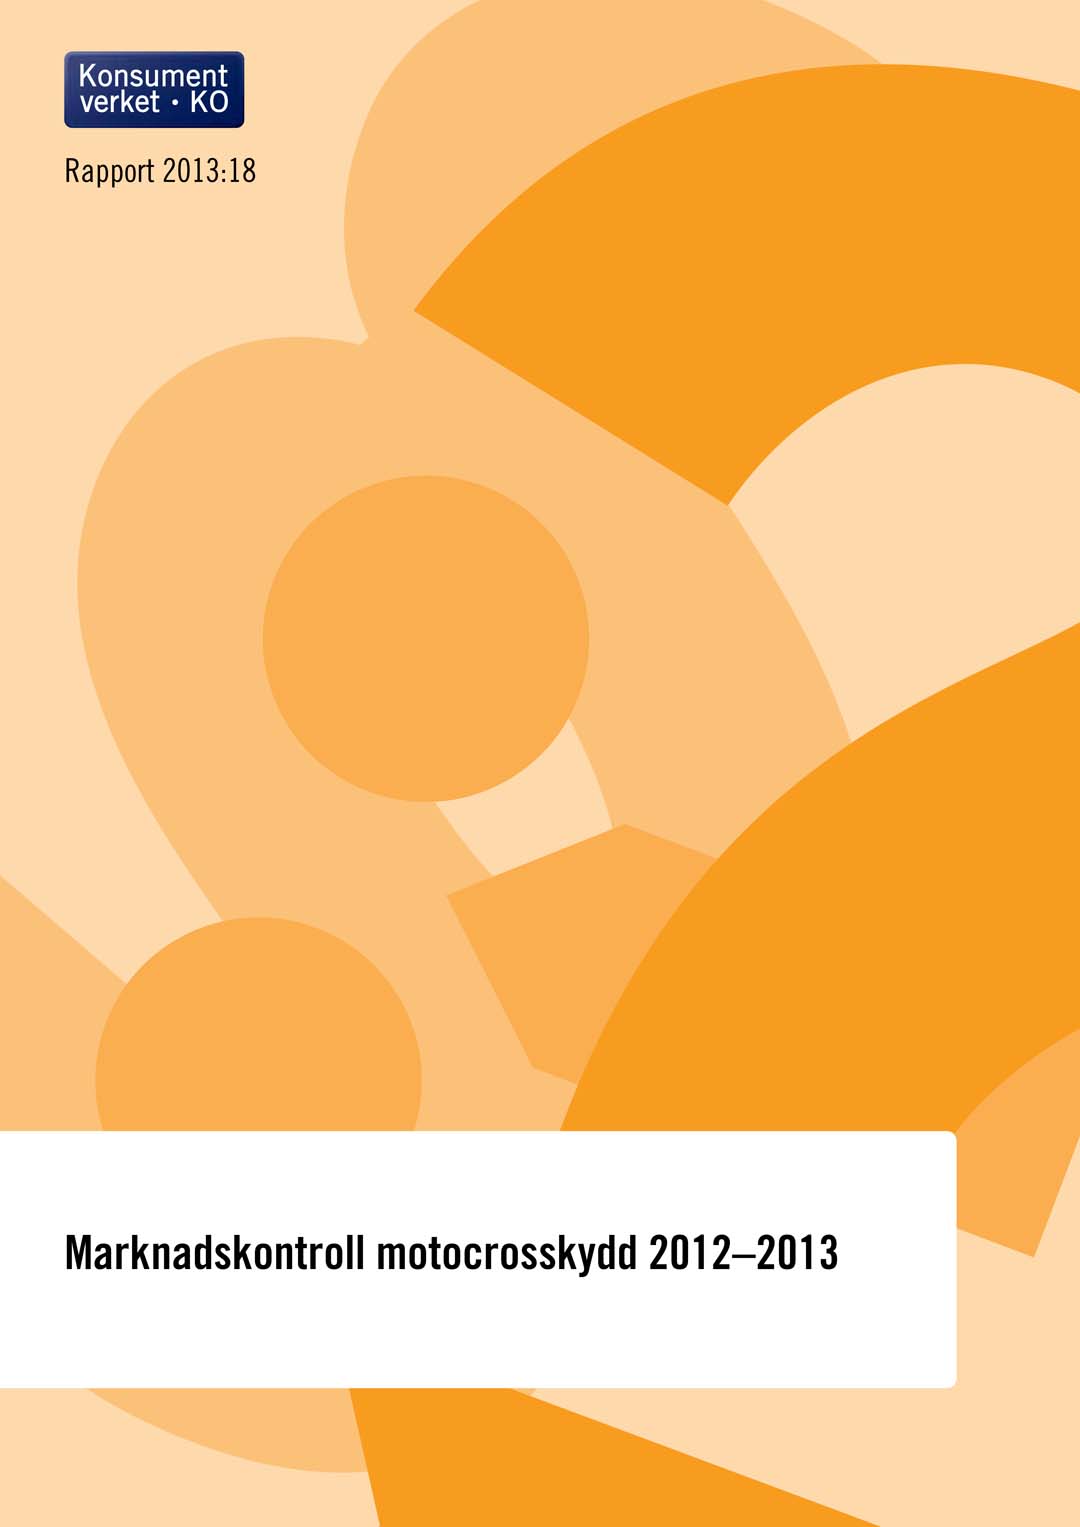 Rapport 2013:18 Marknadskontroll motocrosskydd